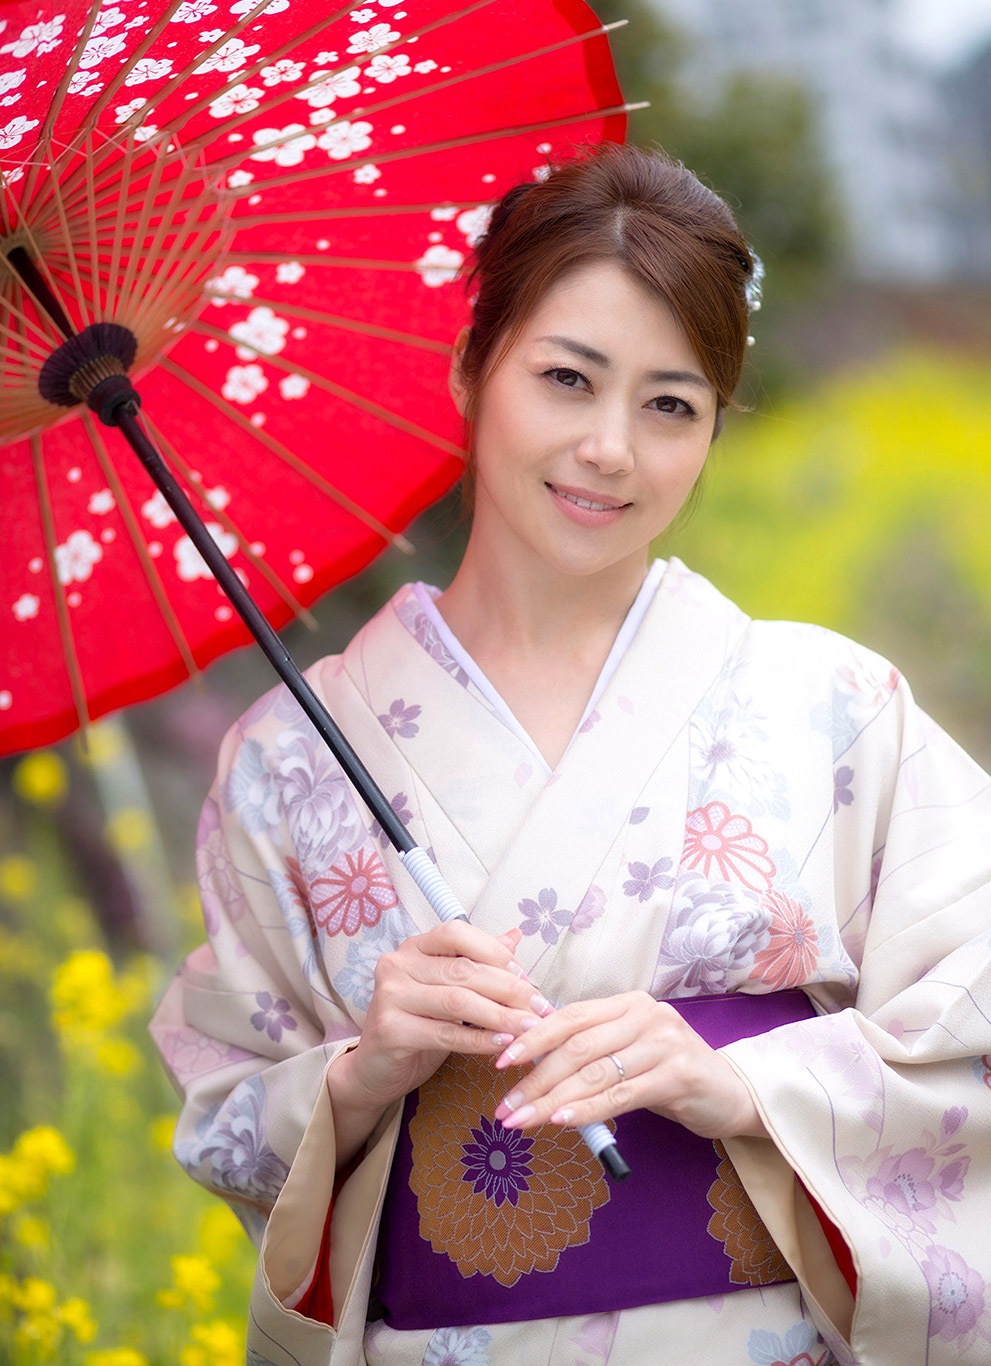 FOTO JAV HD - Maki Hojo Bugil Baju Kimono.